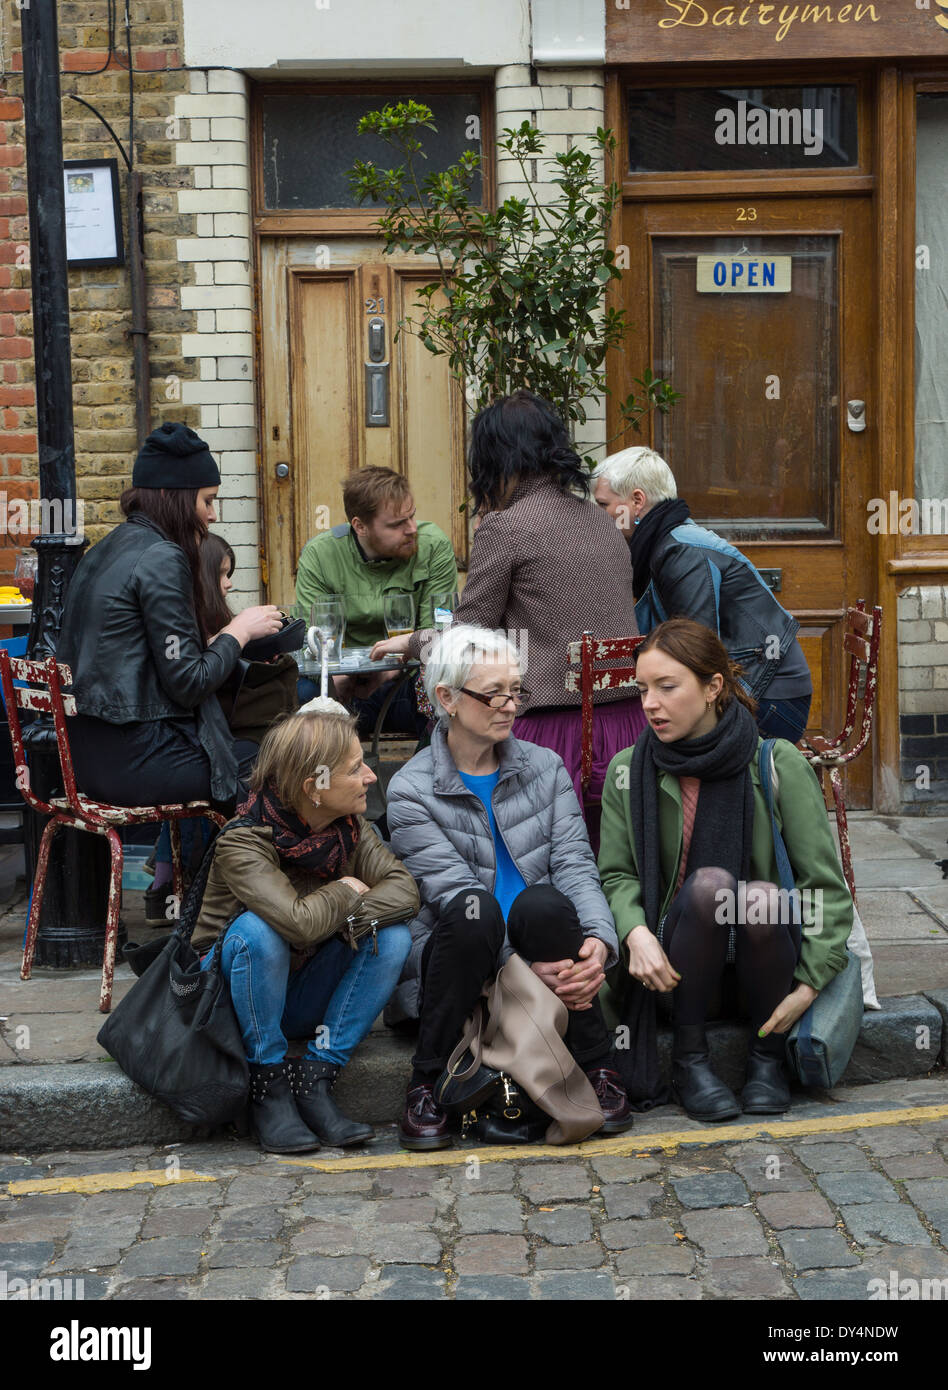 Groupe de personnes à l'extérieur d'un pub à Londres Banque D'Images